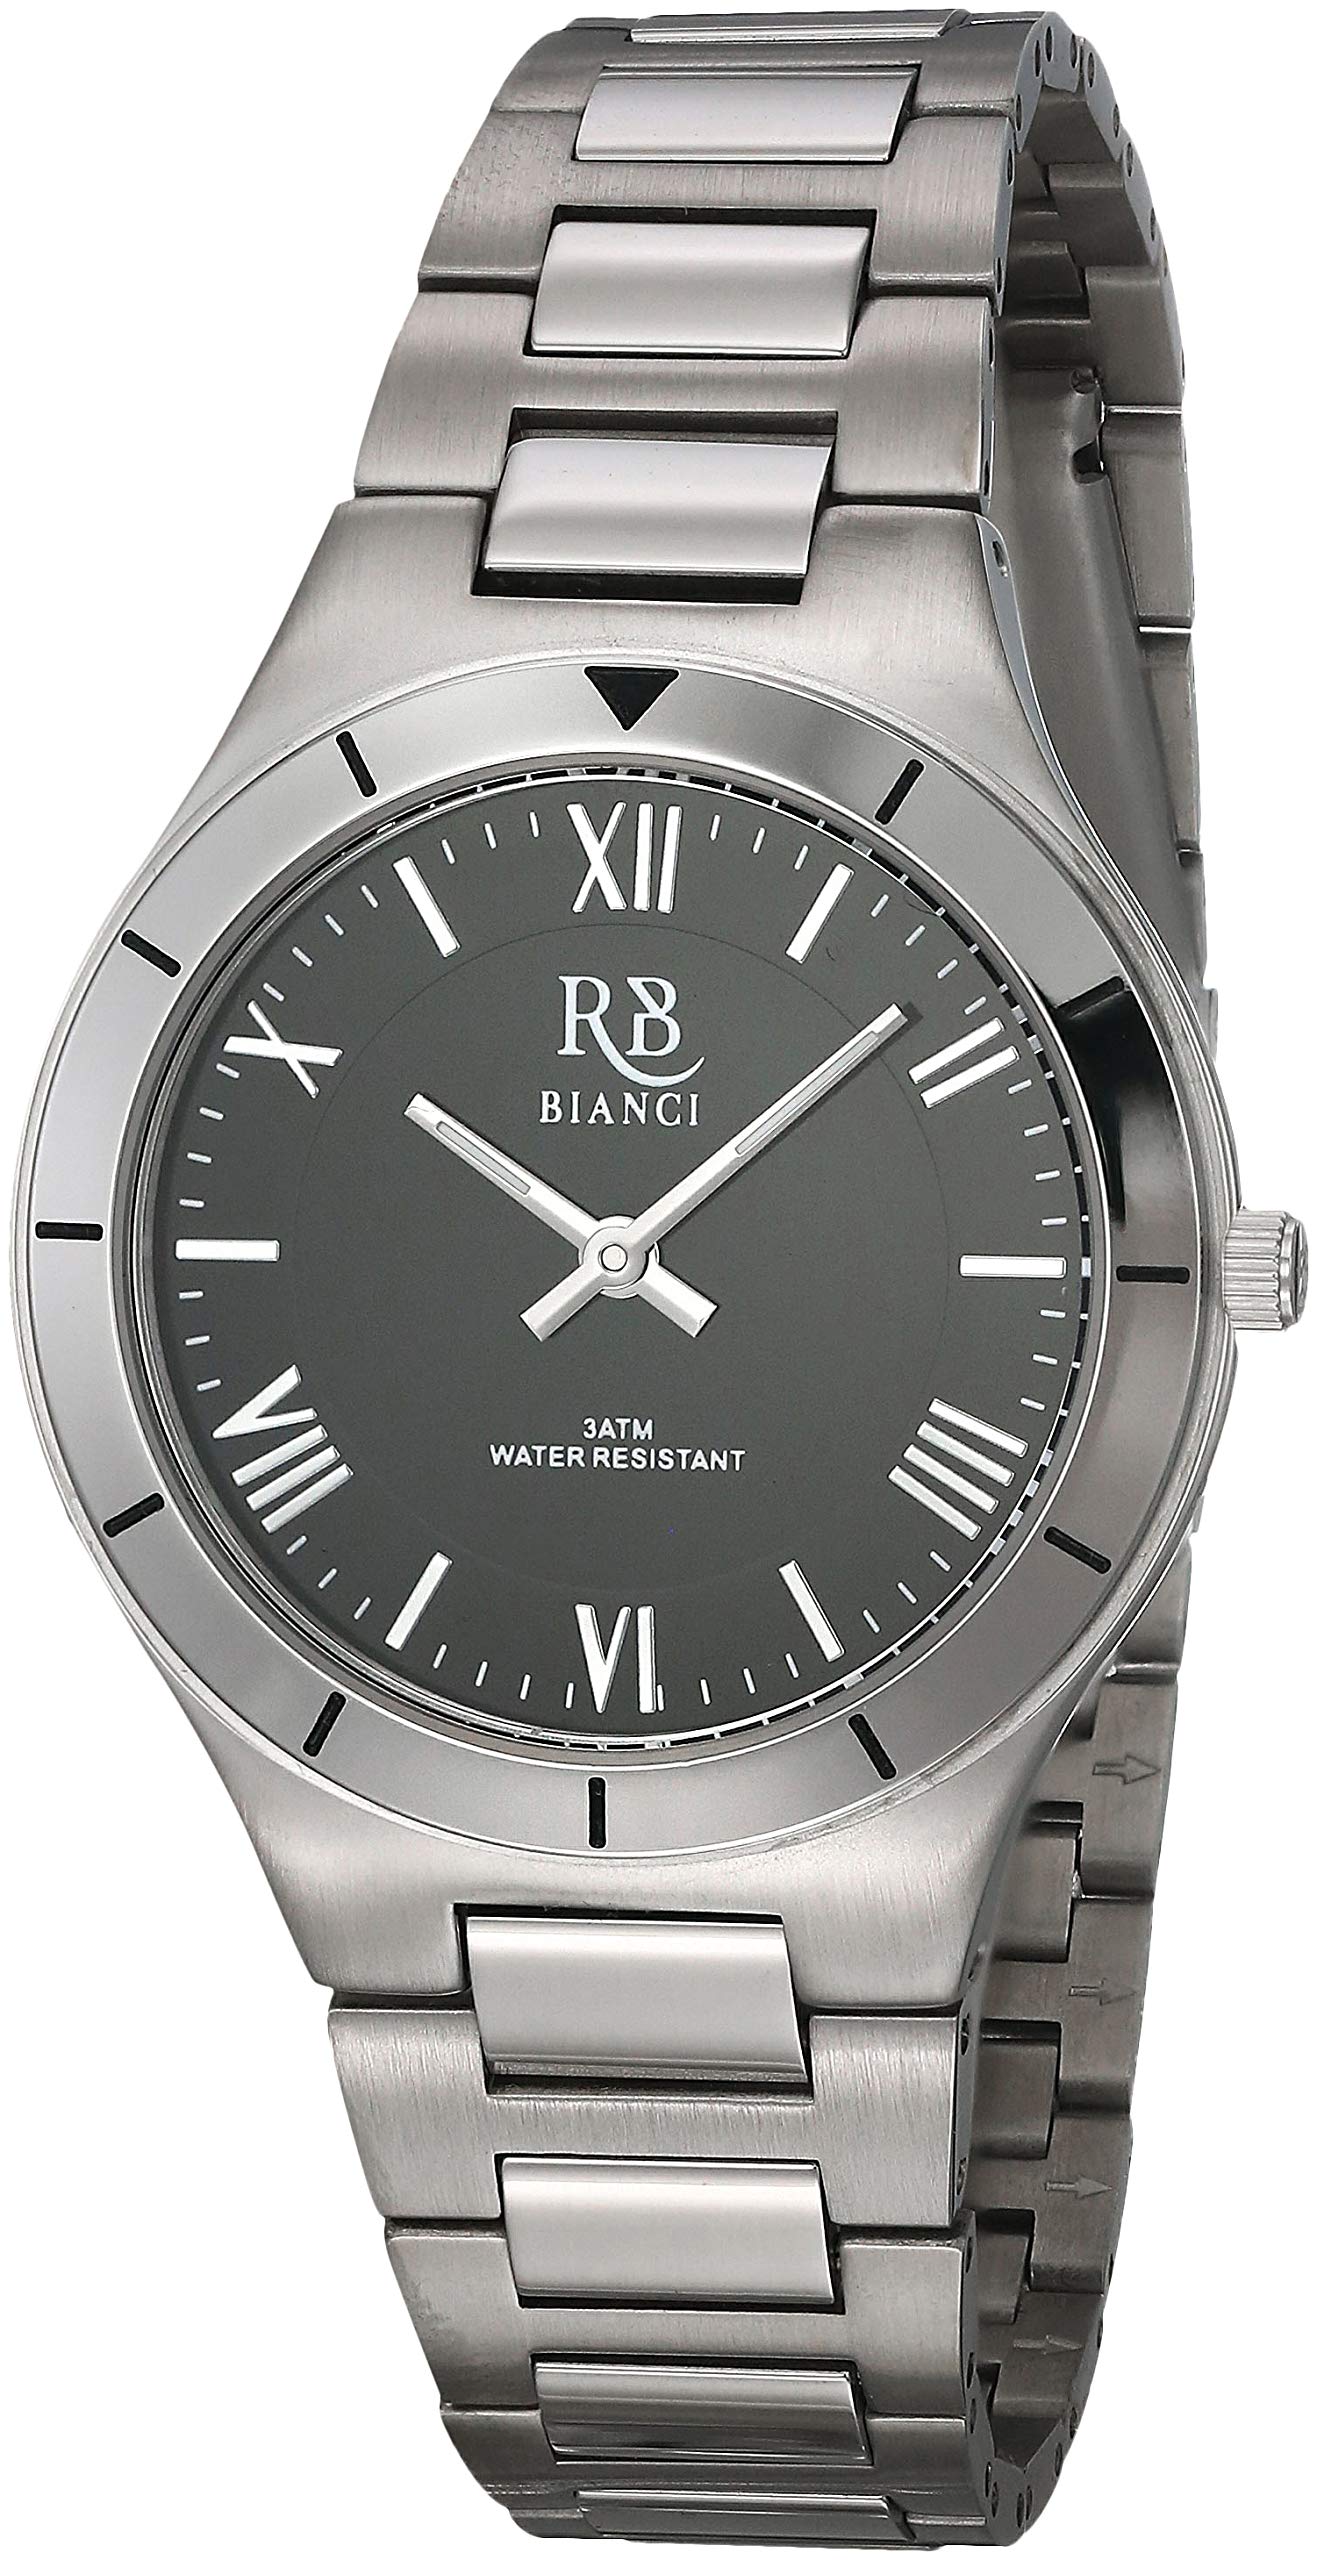 ROBERTO BIANCI WATCHES Women's RB0412 Eterno Analog Display Quartz Silver Watch